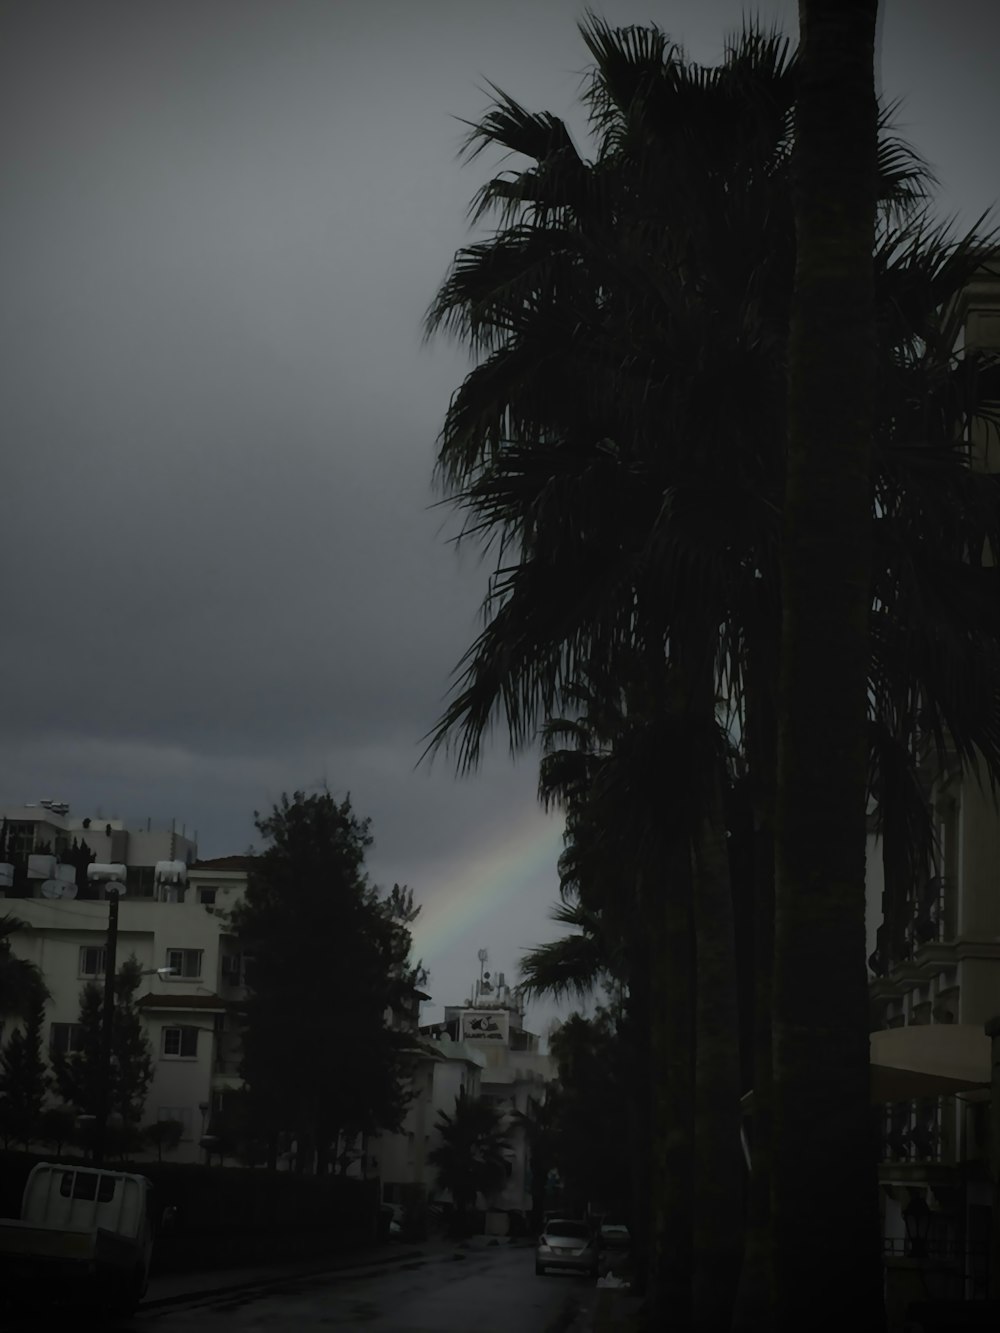 a rainbow in the sky over a city street